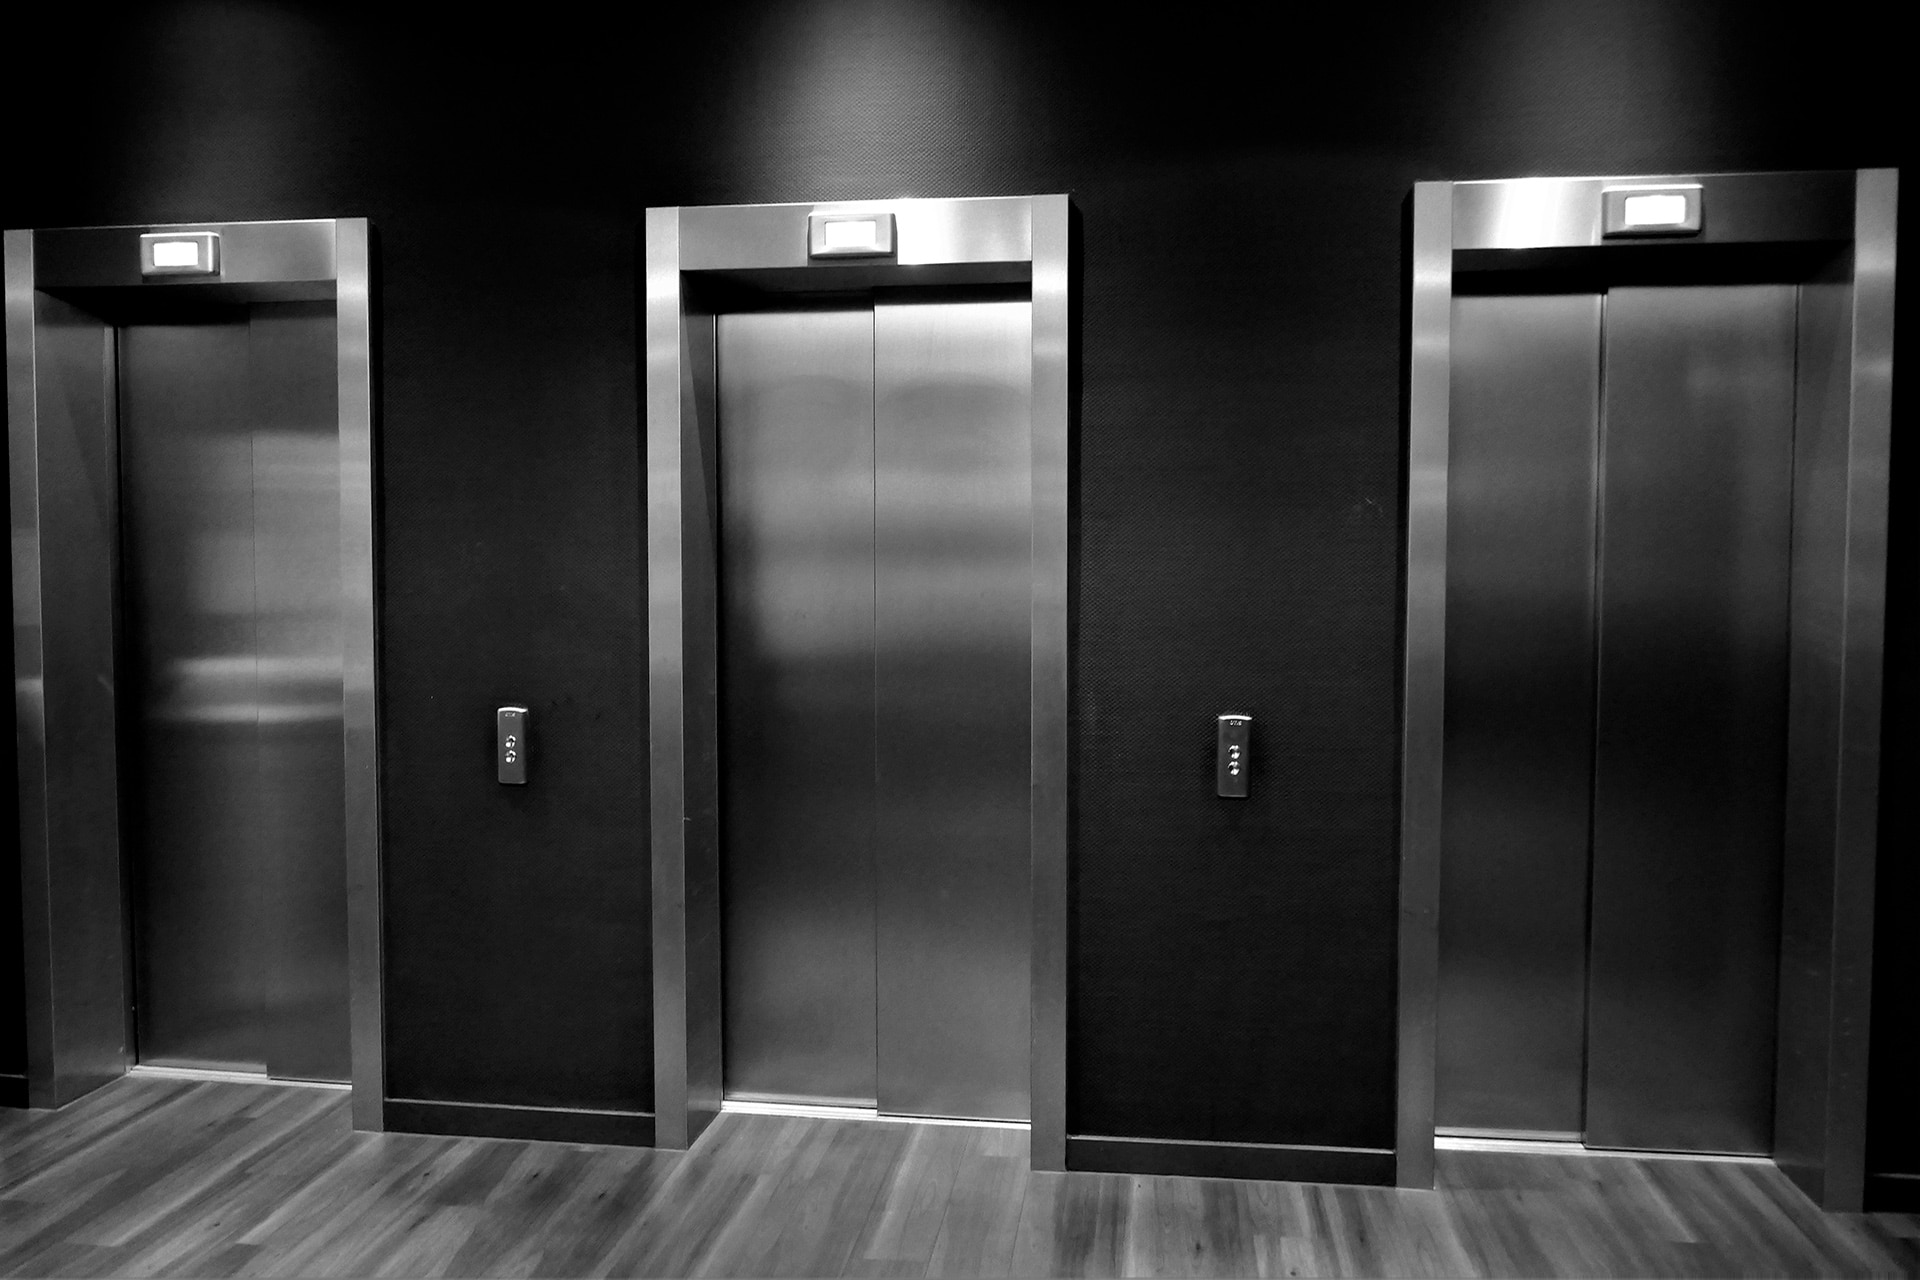 Ascensores Manelso reforma de ascensores